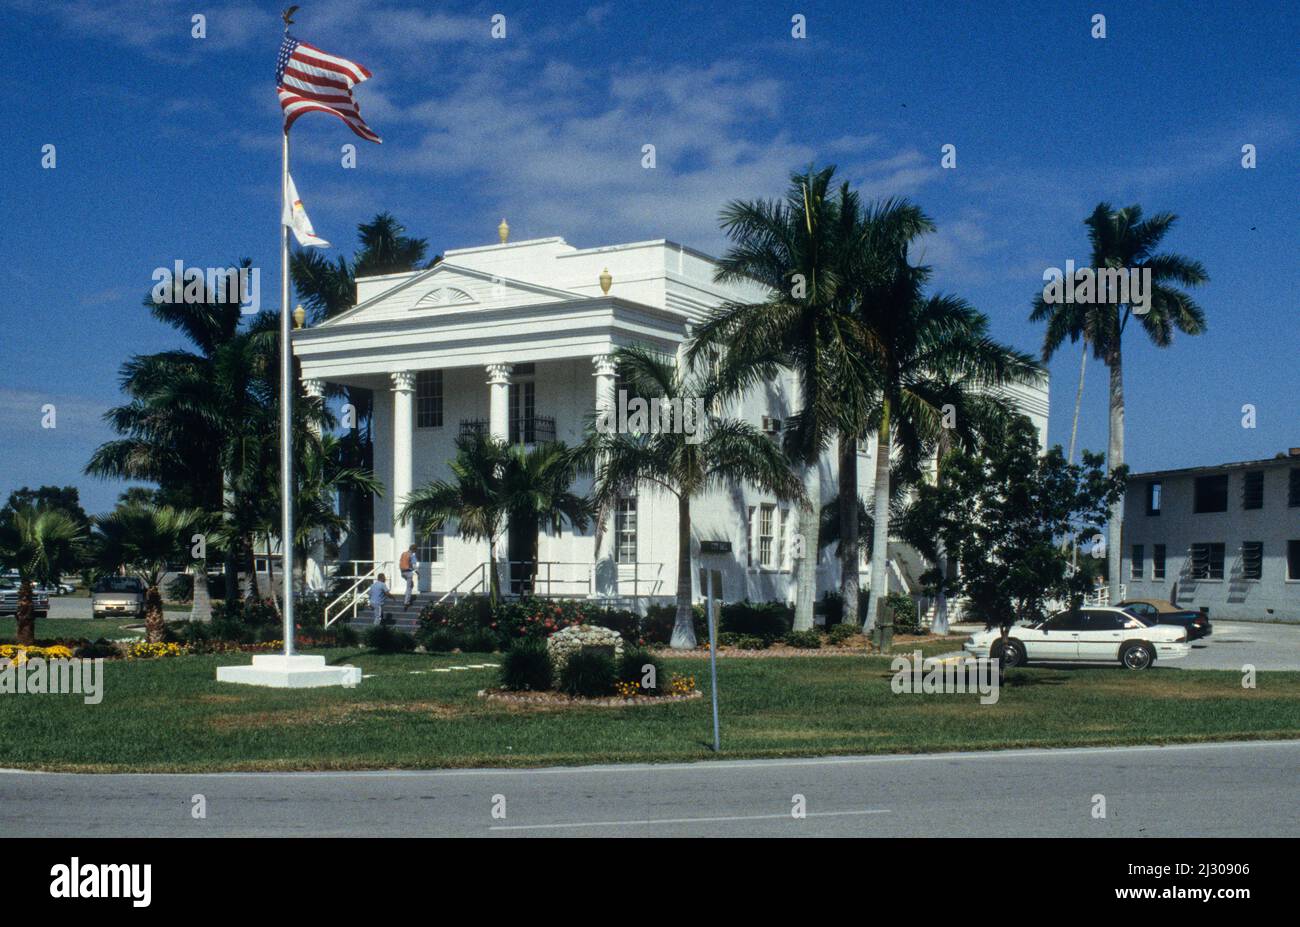 Die historische Town Hall im Städtchen Everglades in Florida. - The historic town hall of Everglades, Florida. Stock Photo